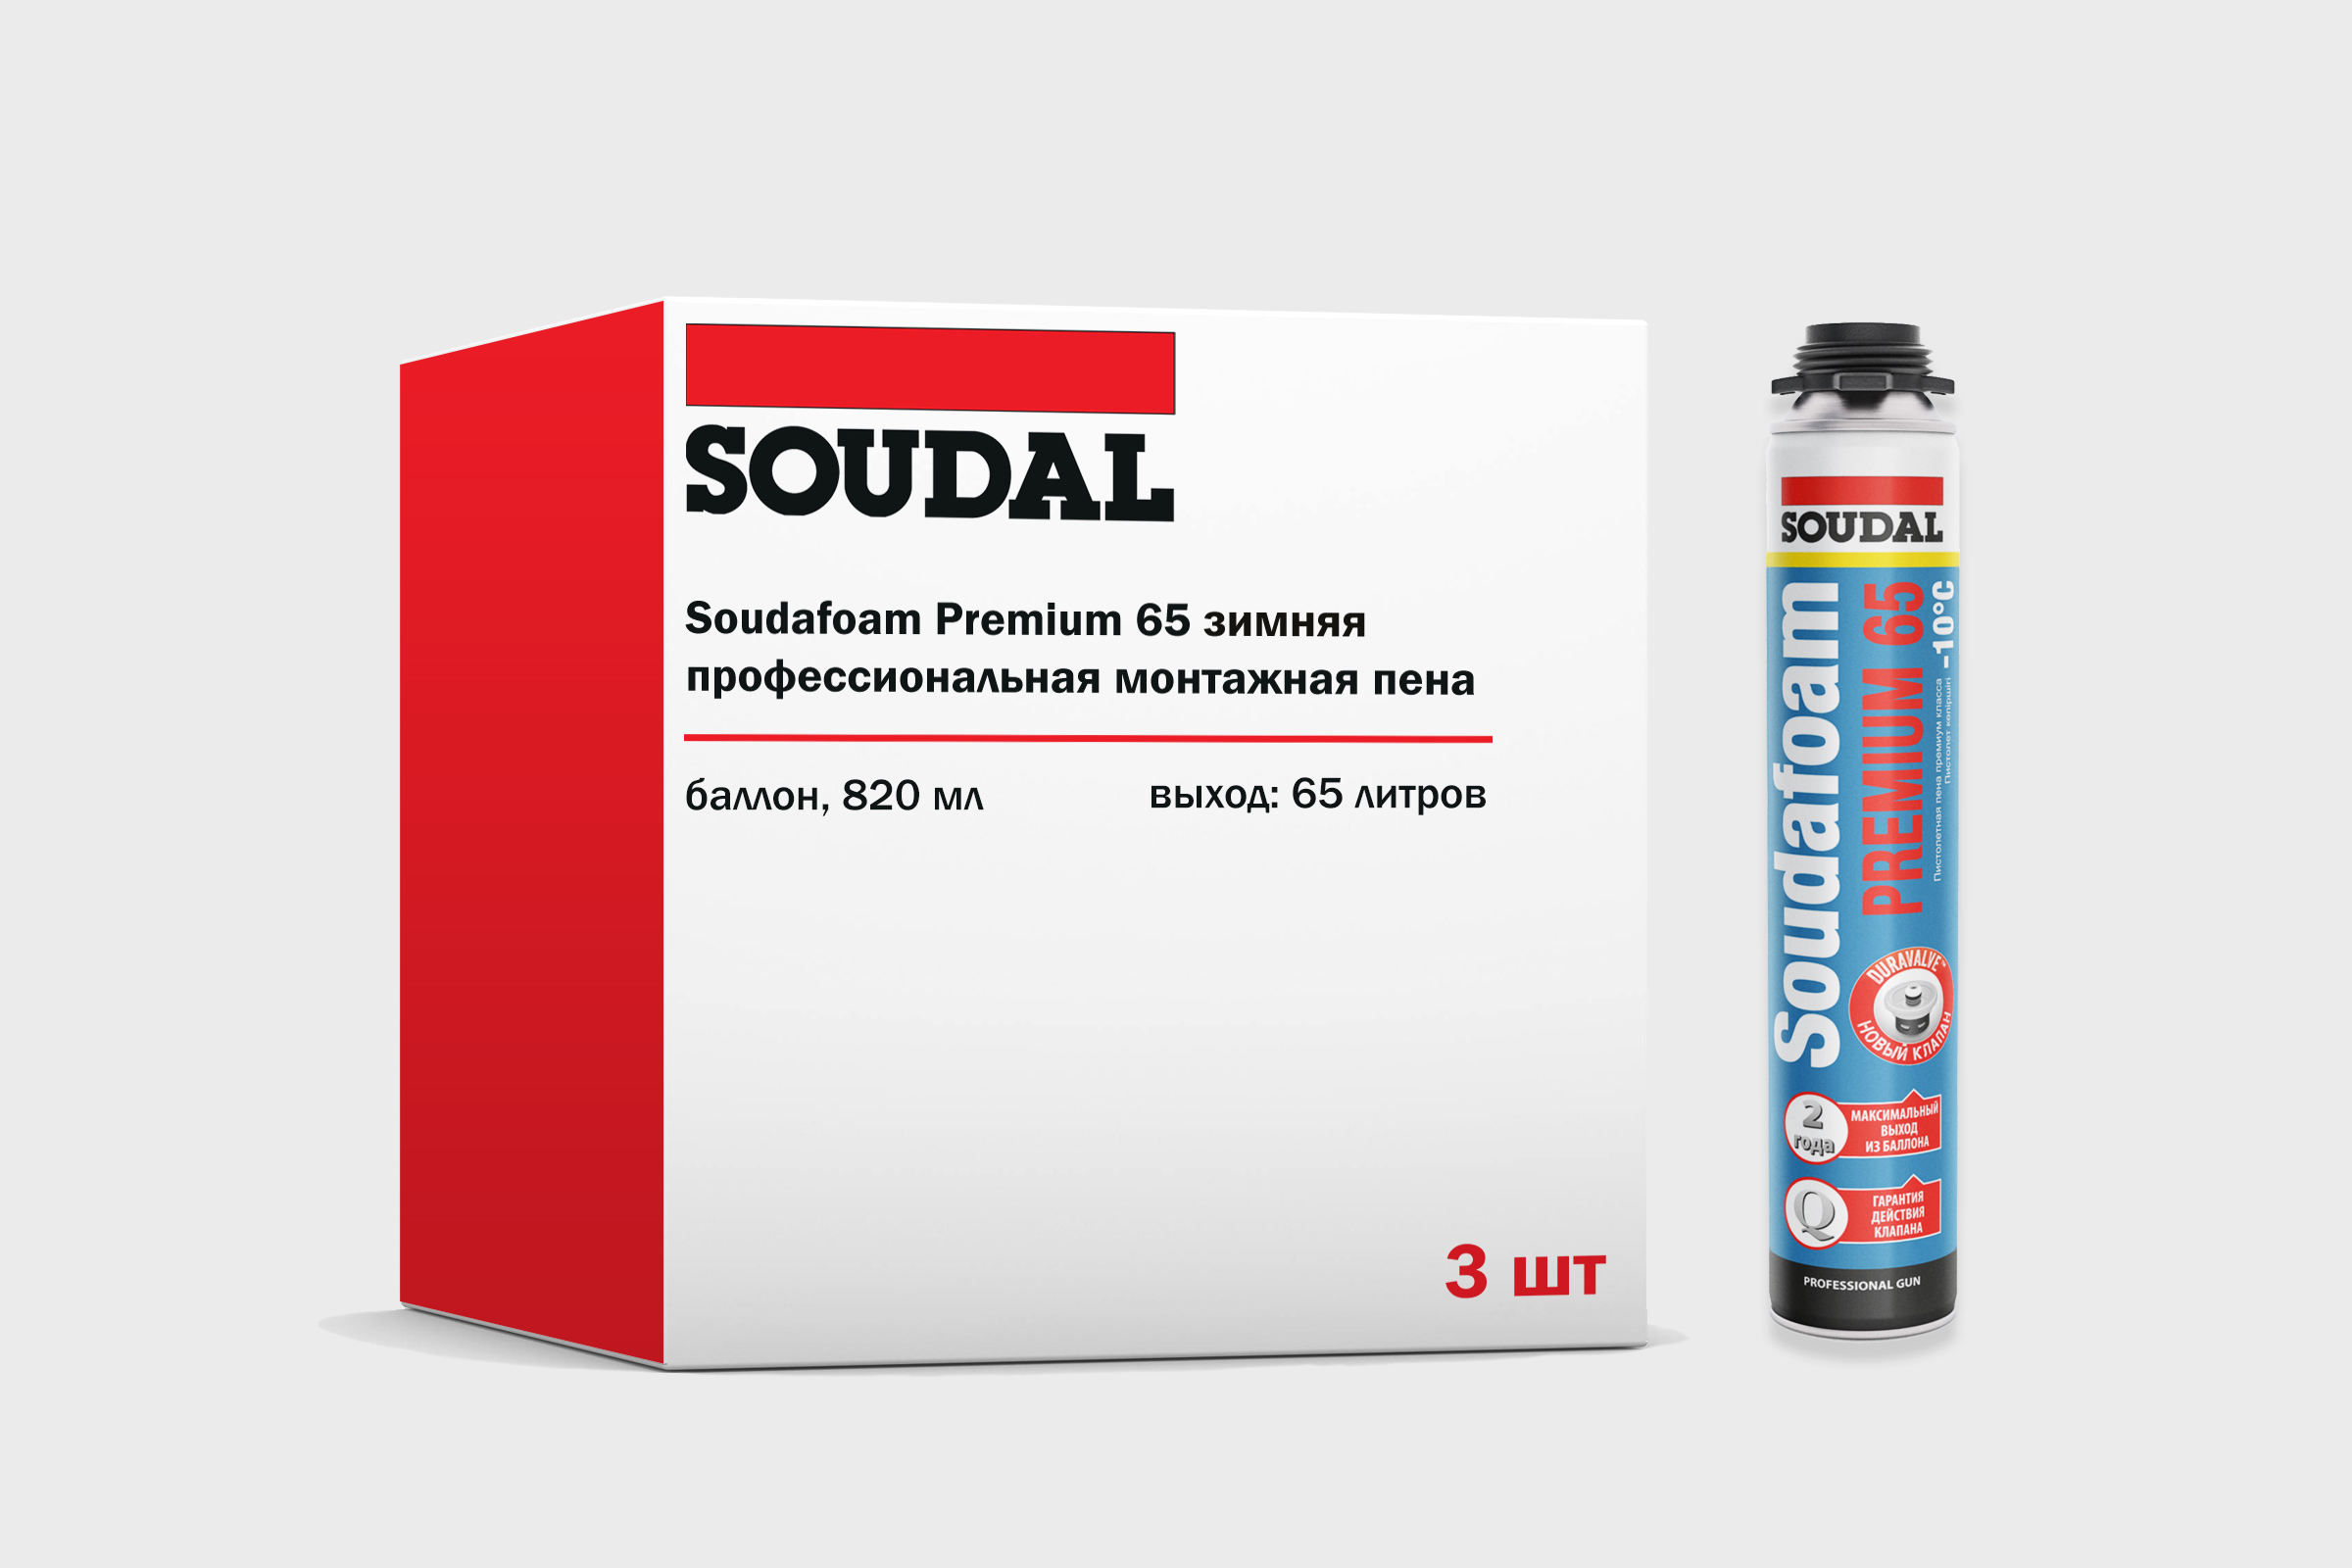 Зимняя монтажная пена Soudal Soudafoam Premium 65 профессиональная 820мл, набор 3 штуки